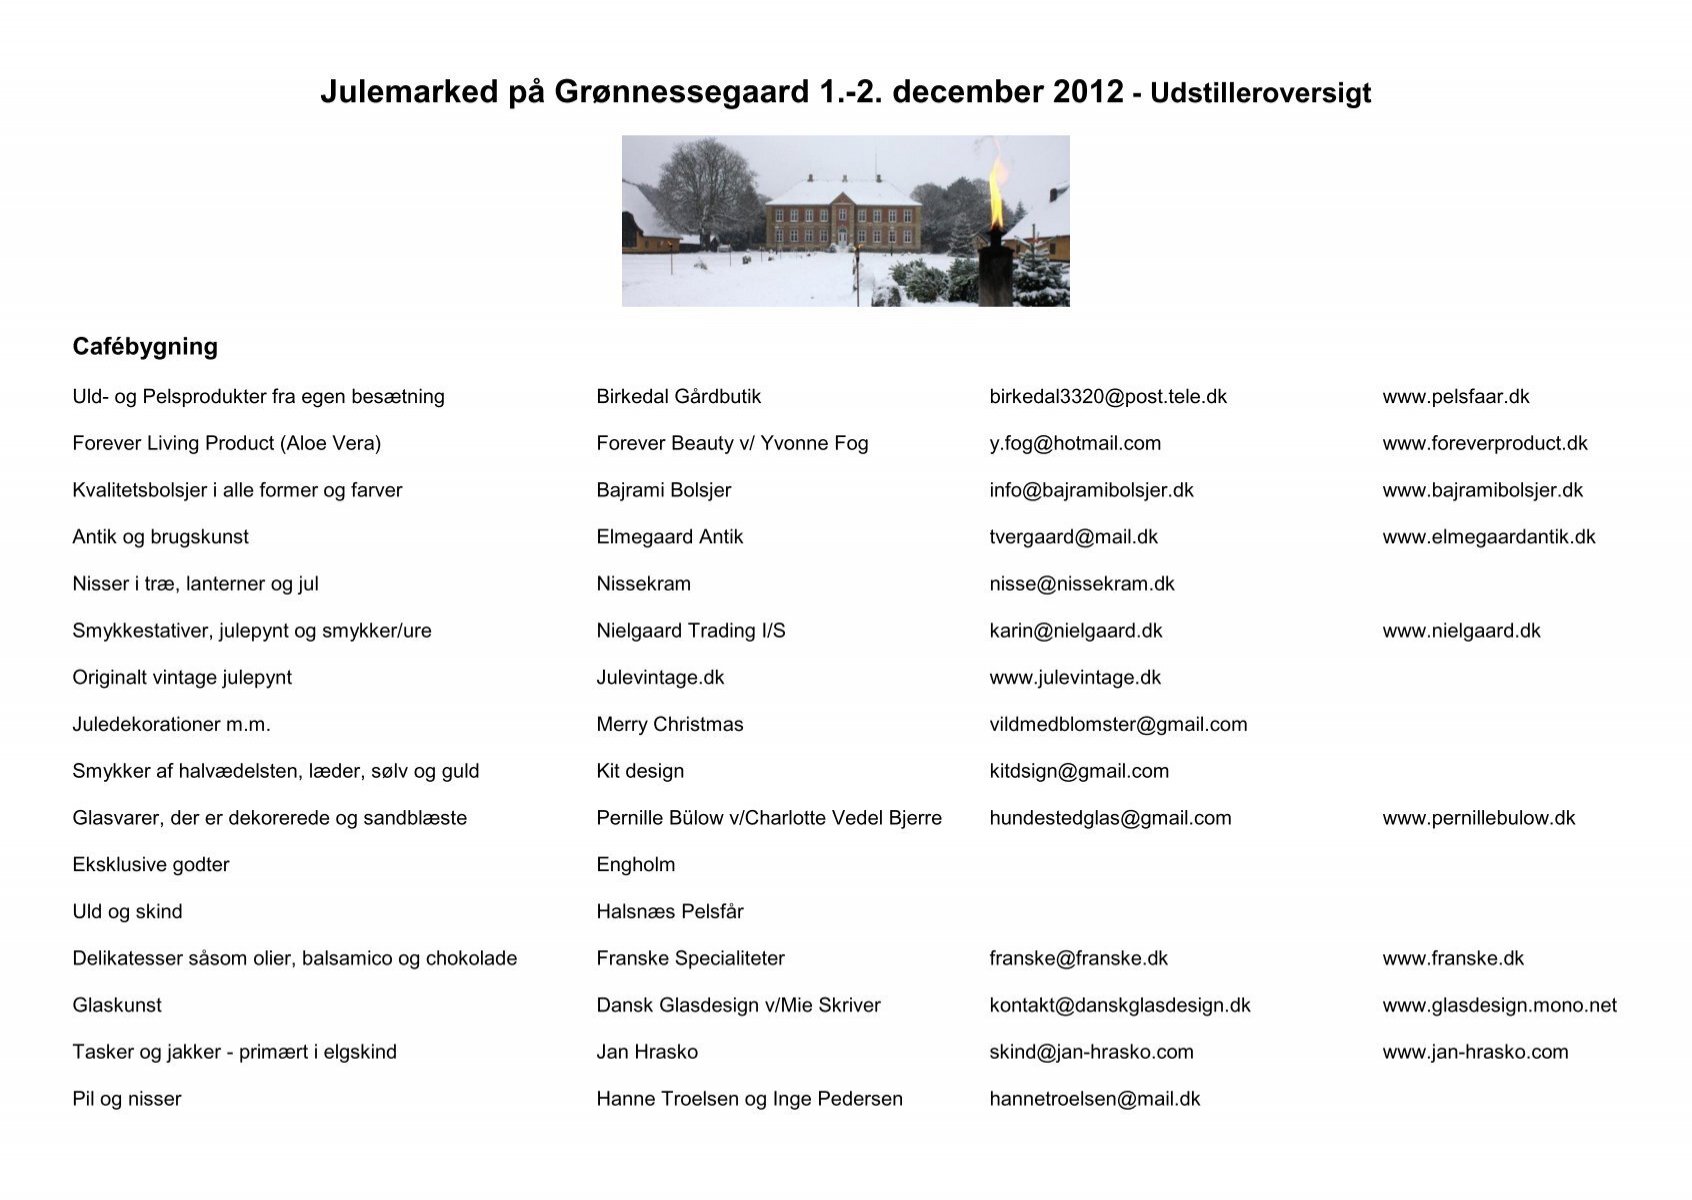 på Grønnessegaard 1.-2. december 2012